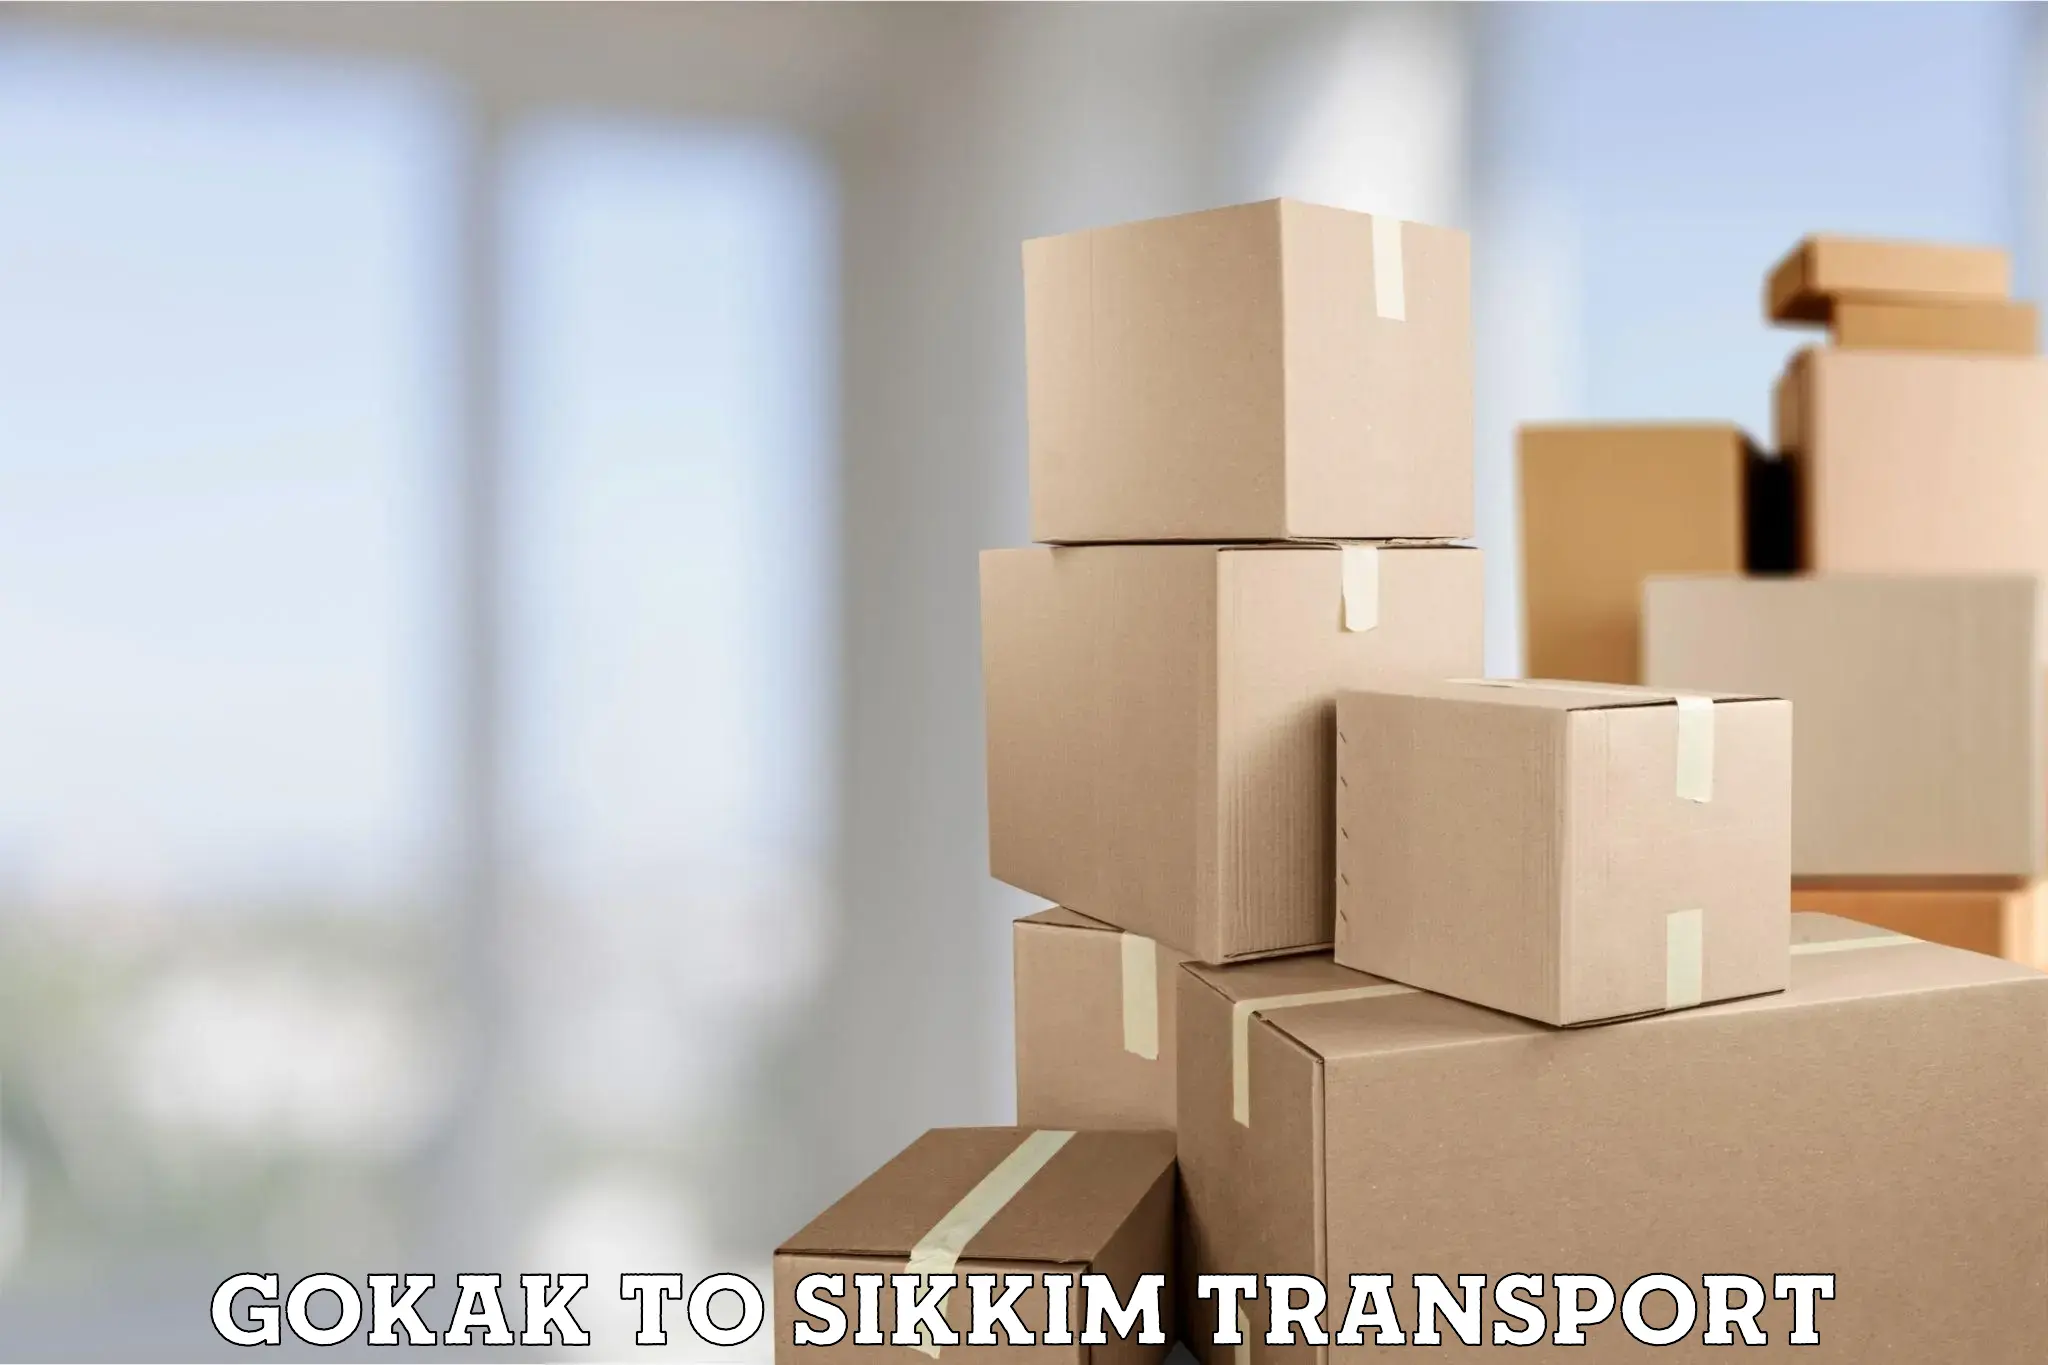 Daily parcel service transport Gokak to Mangan